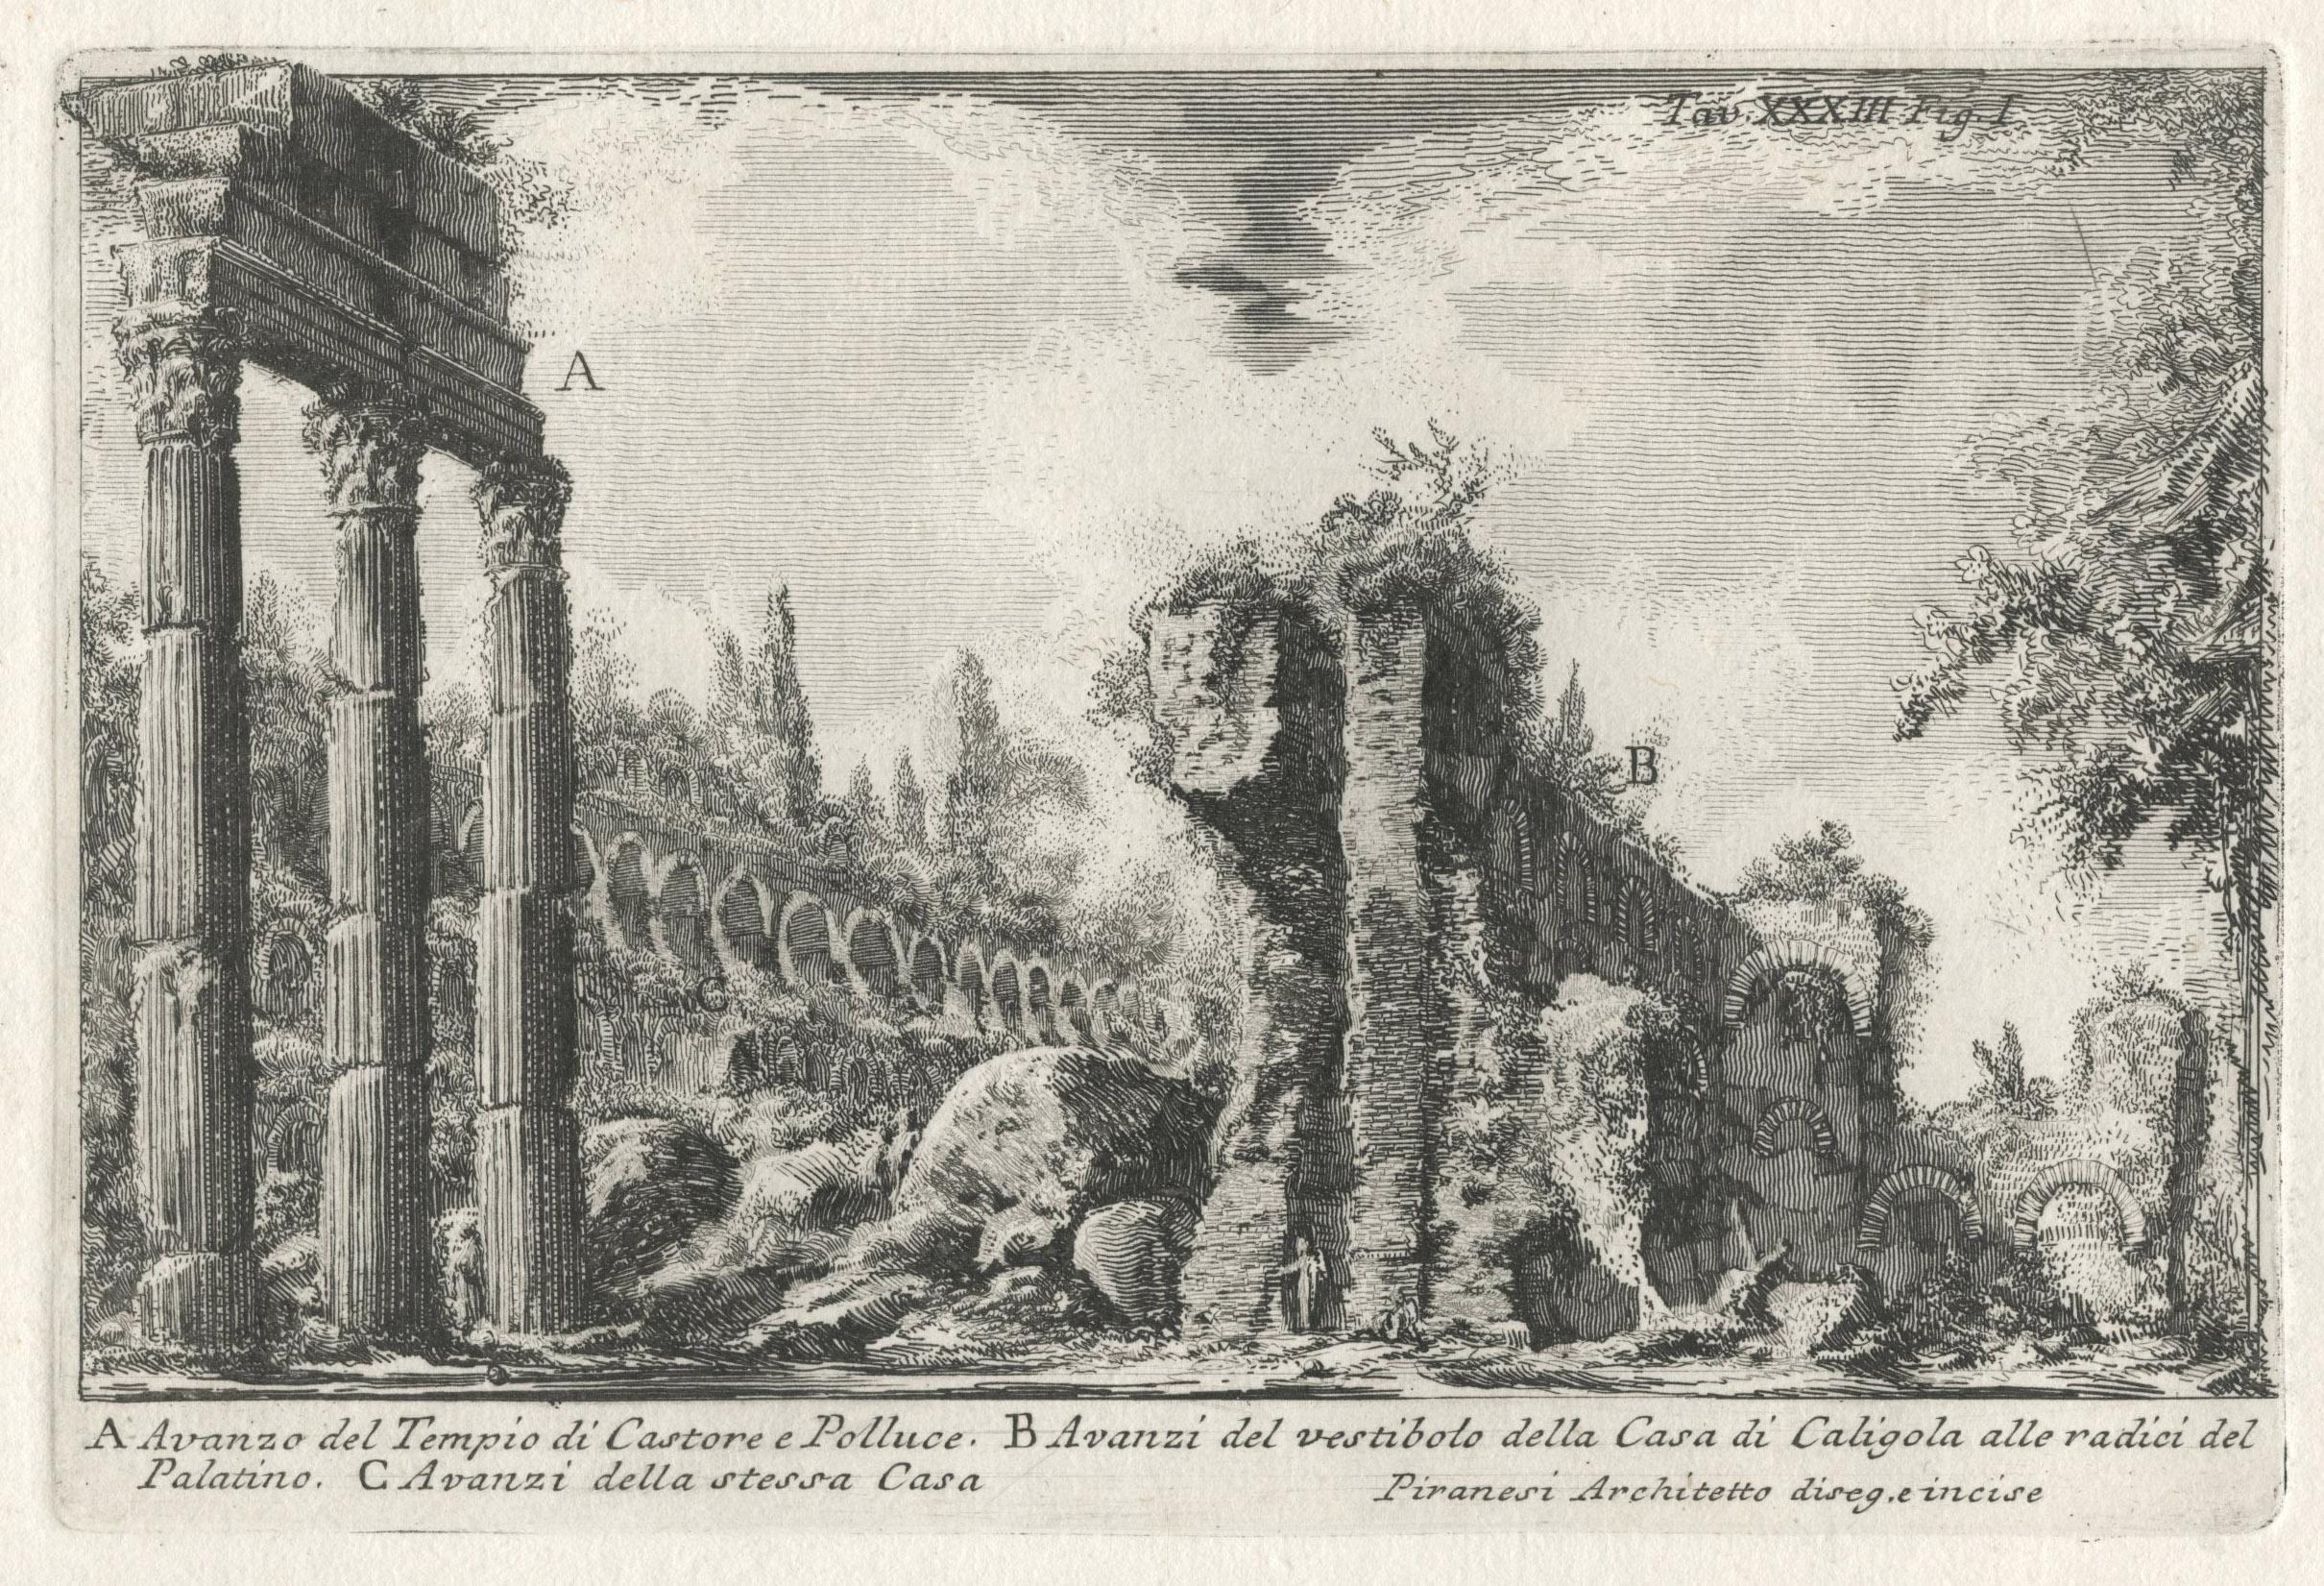 XXXIII Abb. I Avanzo del Tempio di Castore e Polluce 